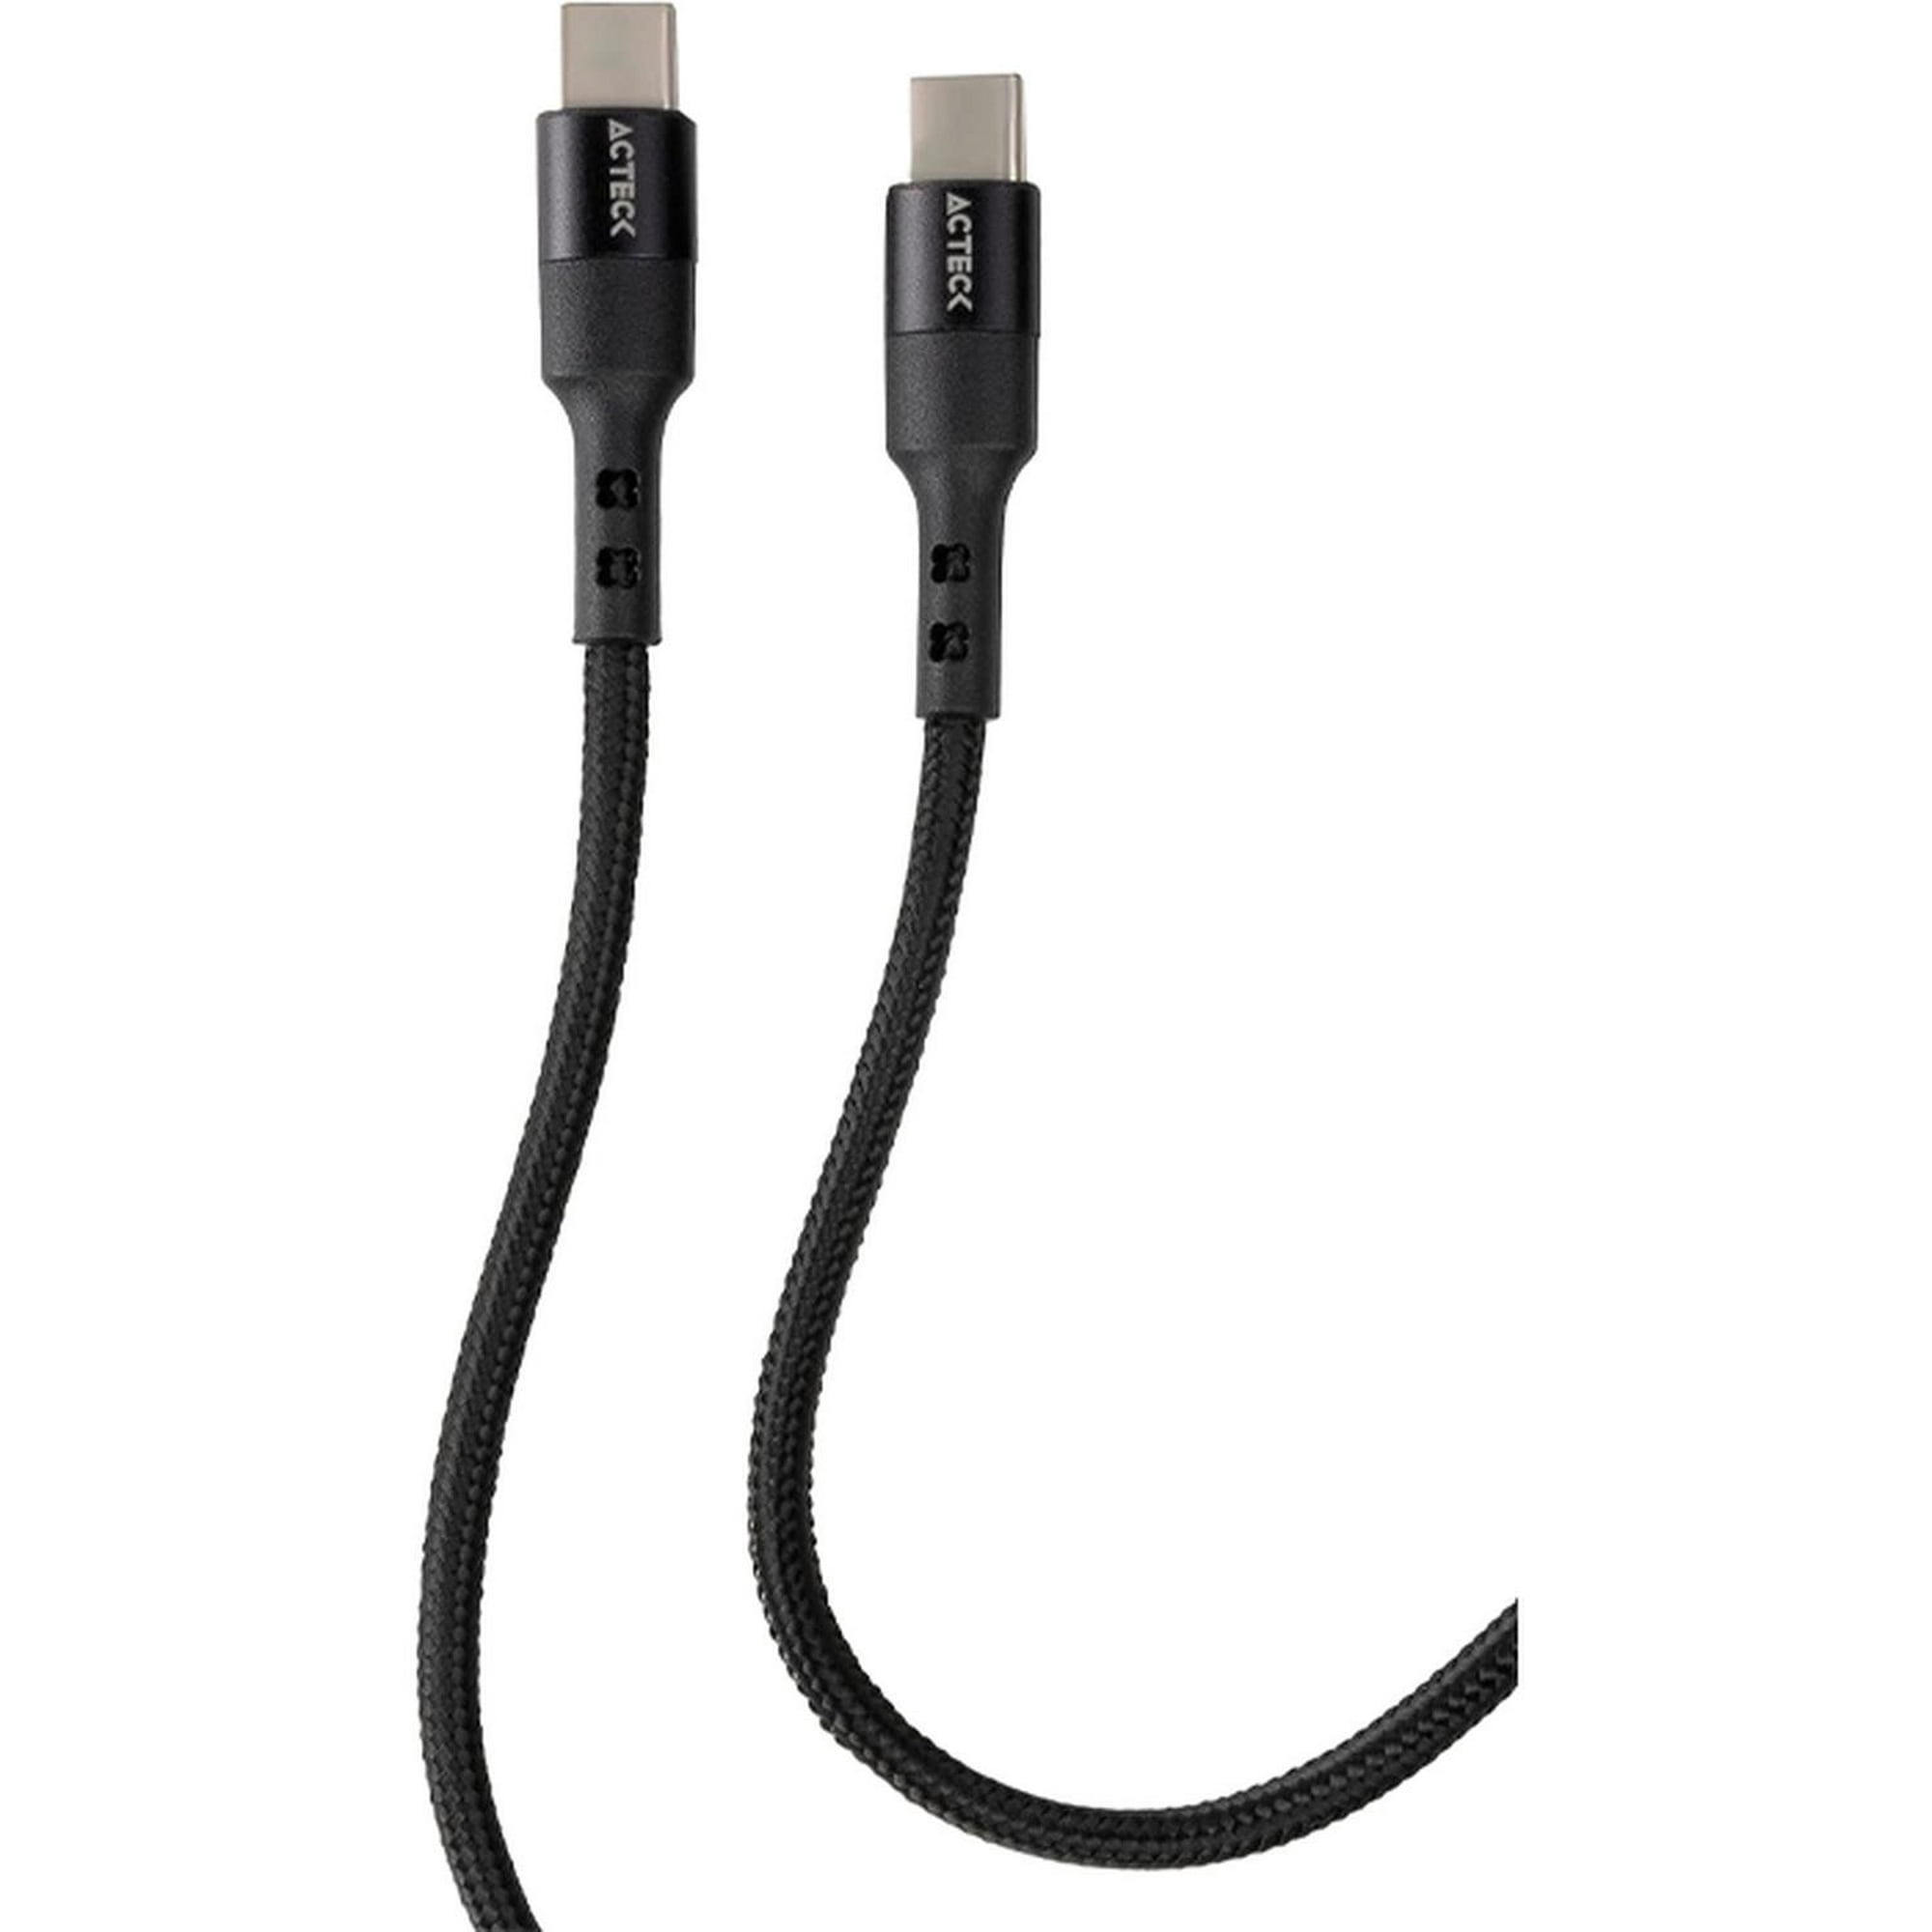 Cable Startech de 3mts Alargador USB 2.0 - Macho a Hembra USB A Blanco